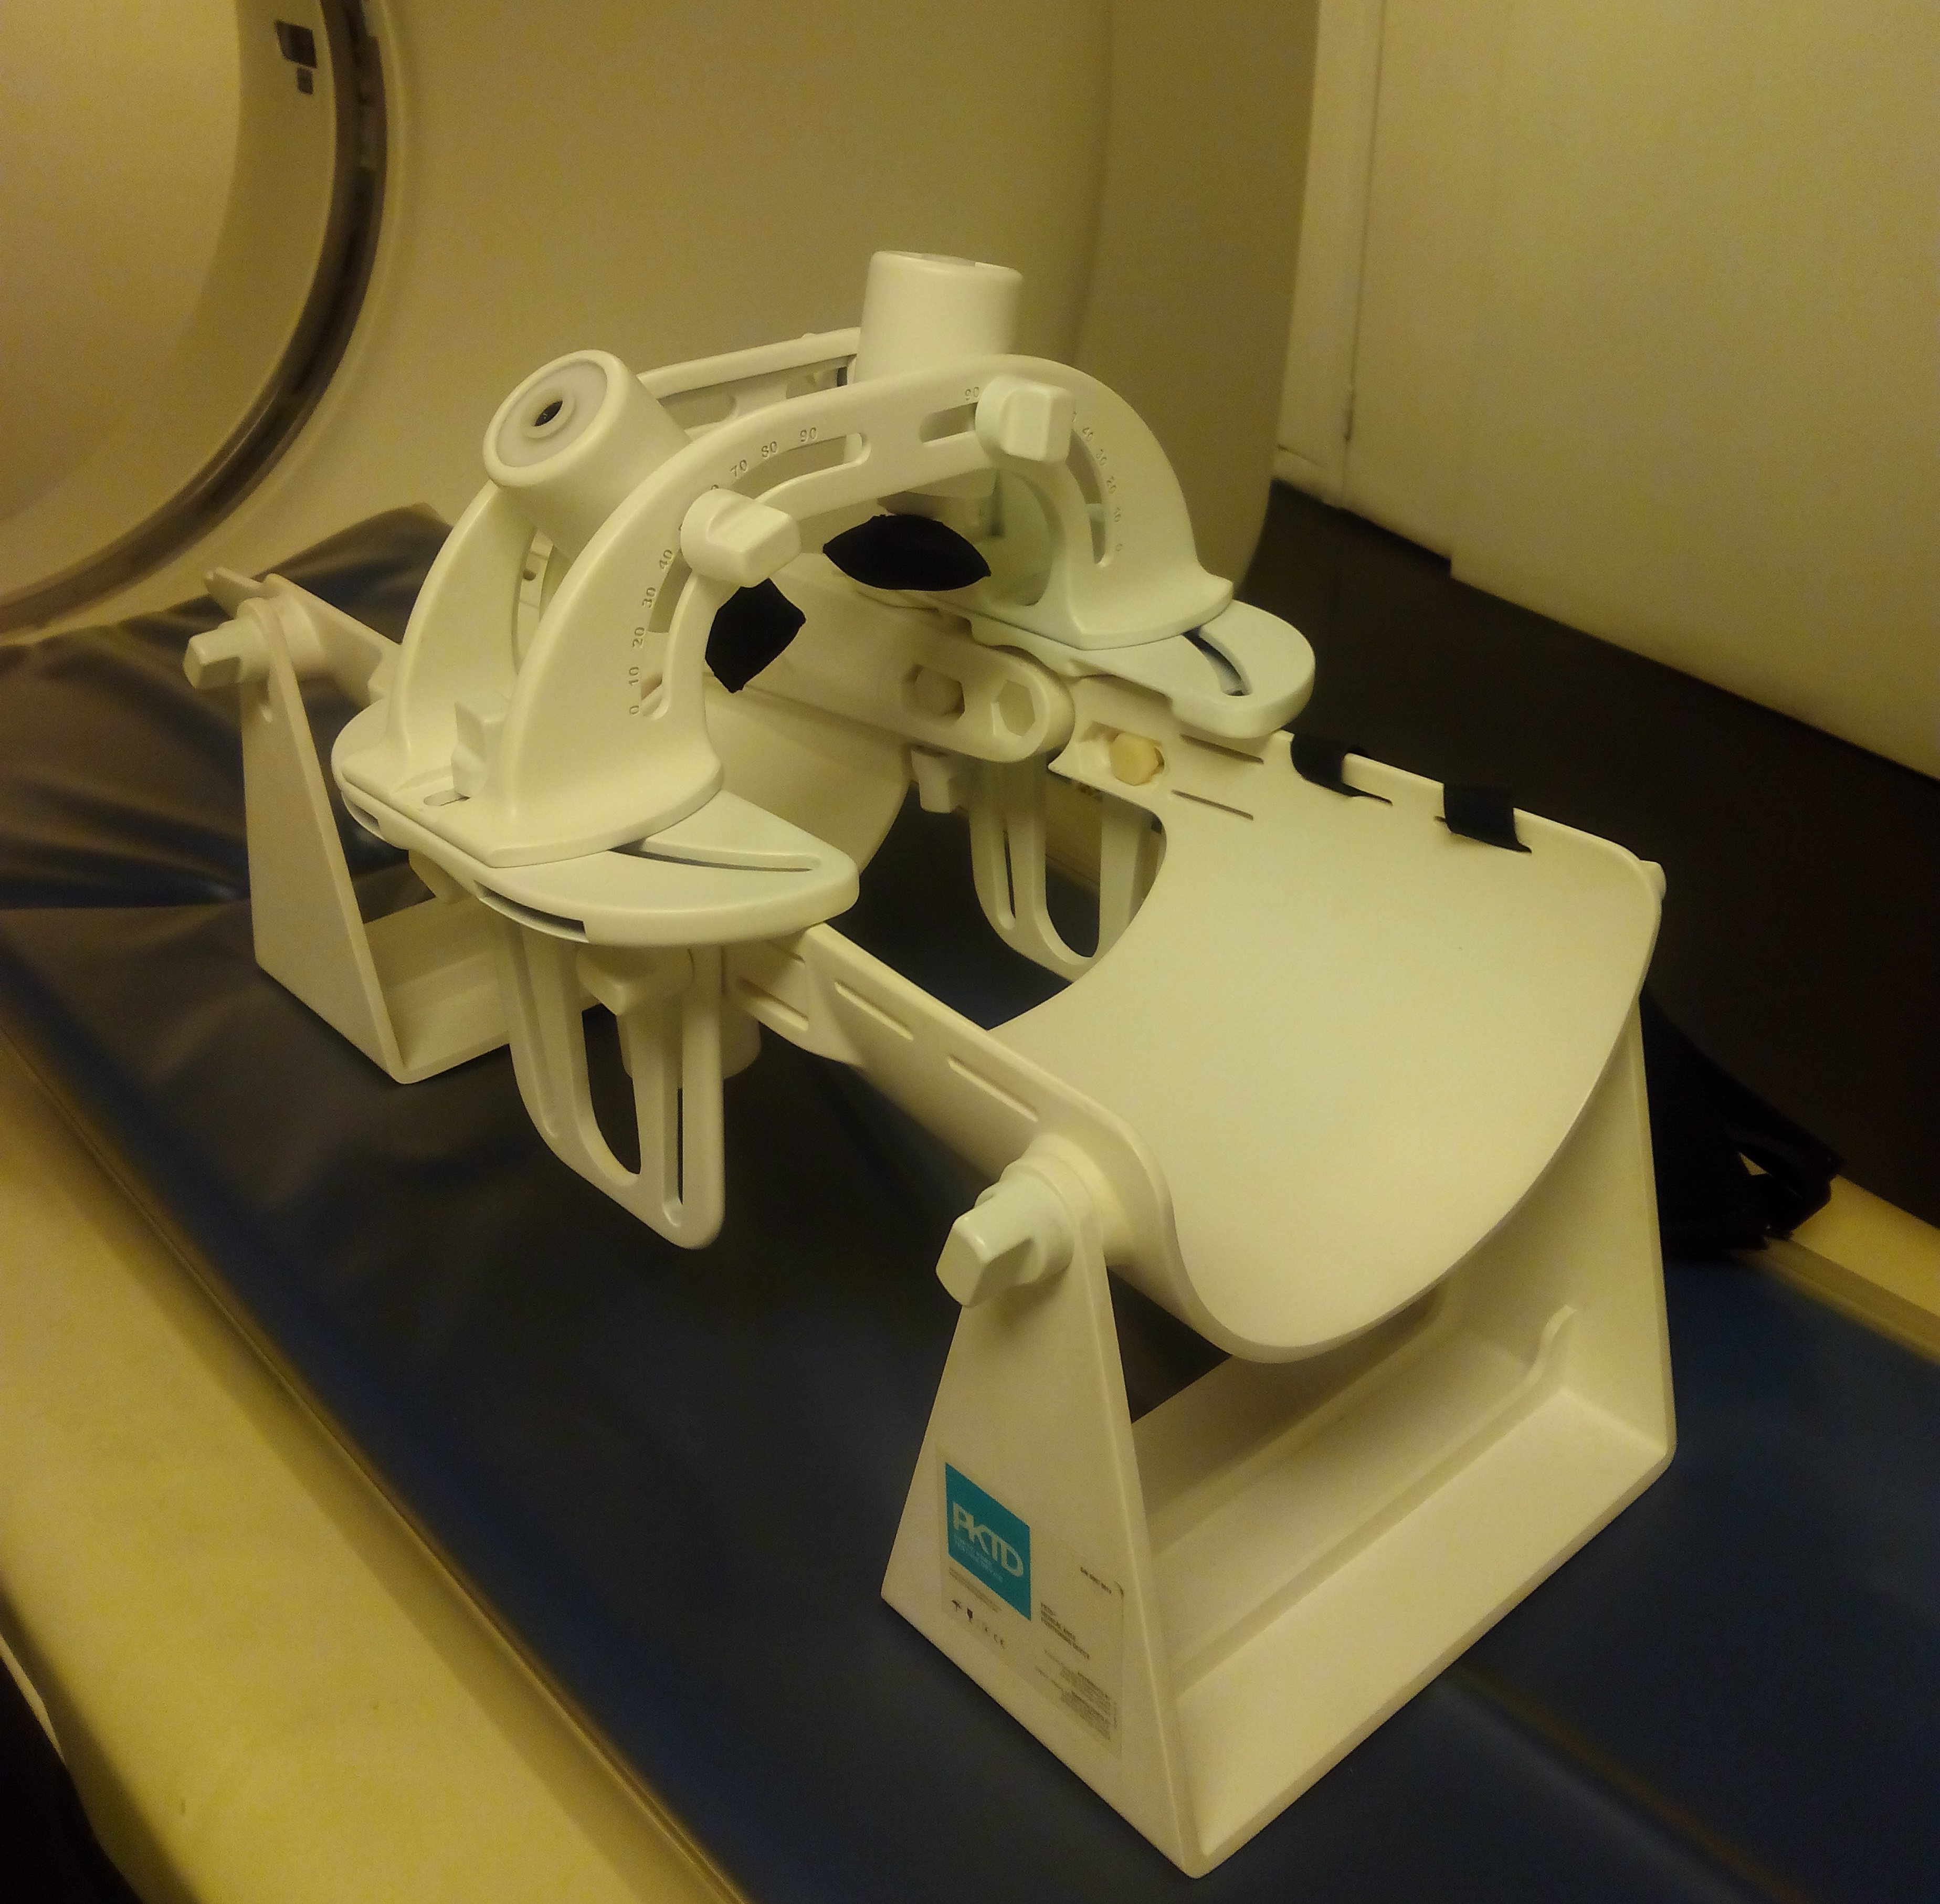 The PPTD Device in an MRI machine